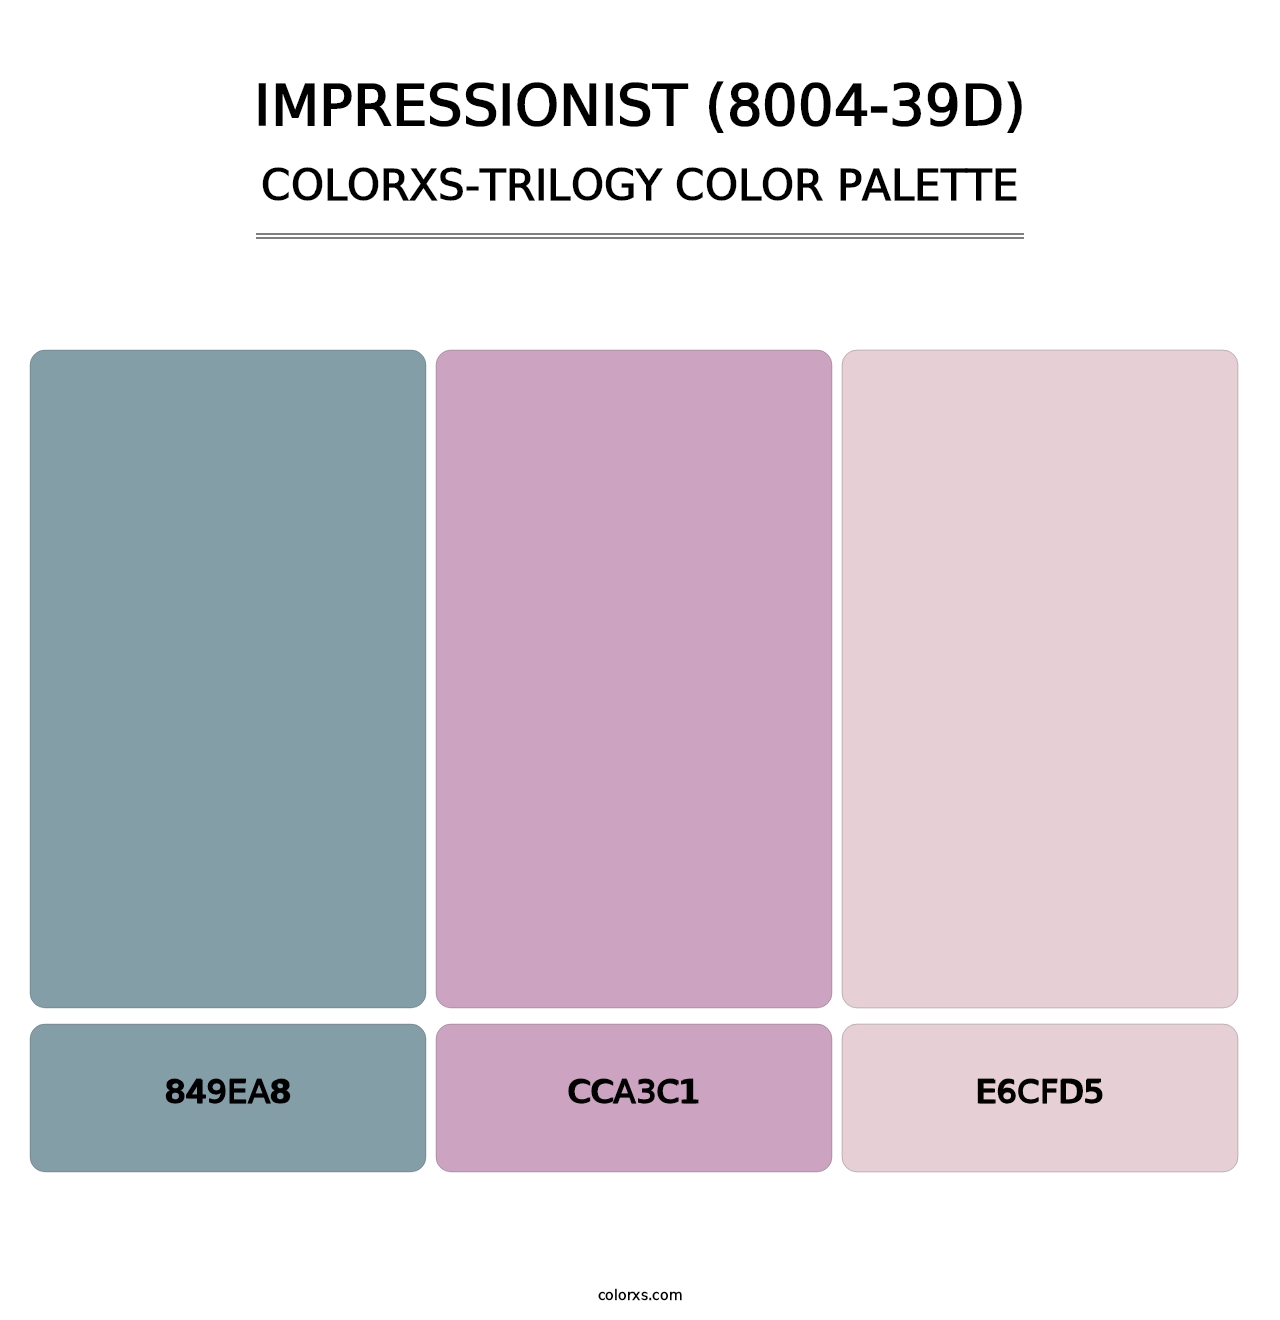 Impressionist (8004-39D) - Colorxs Trilogy Palette